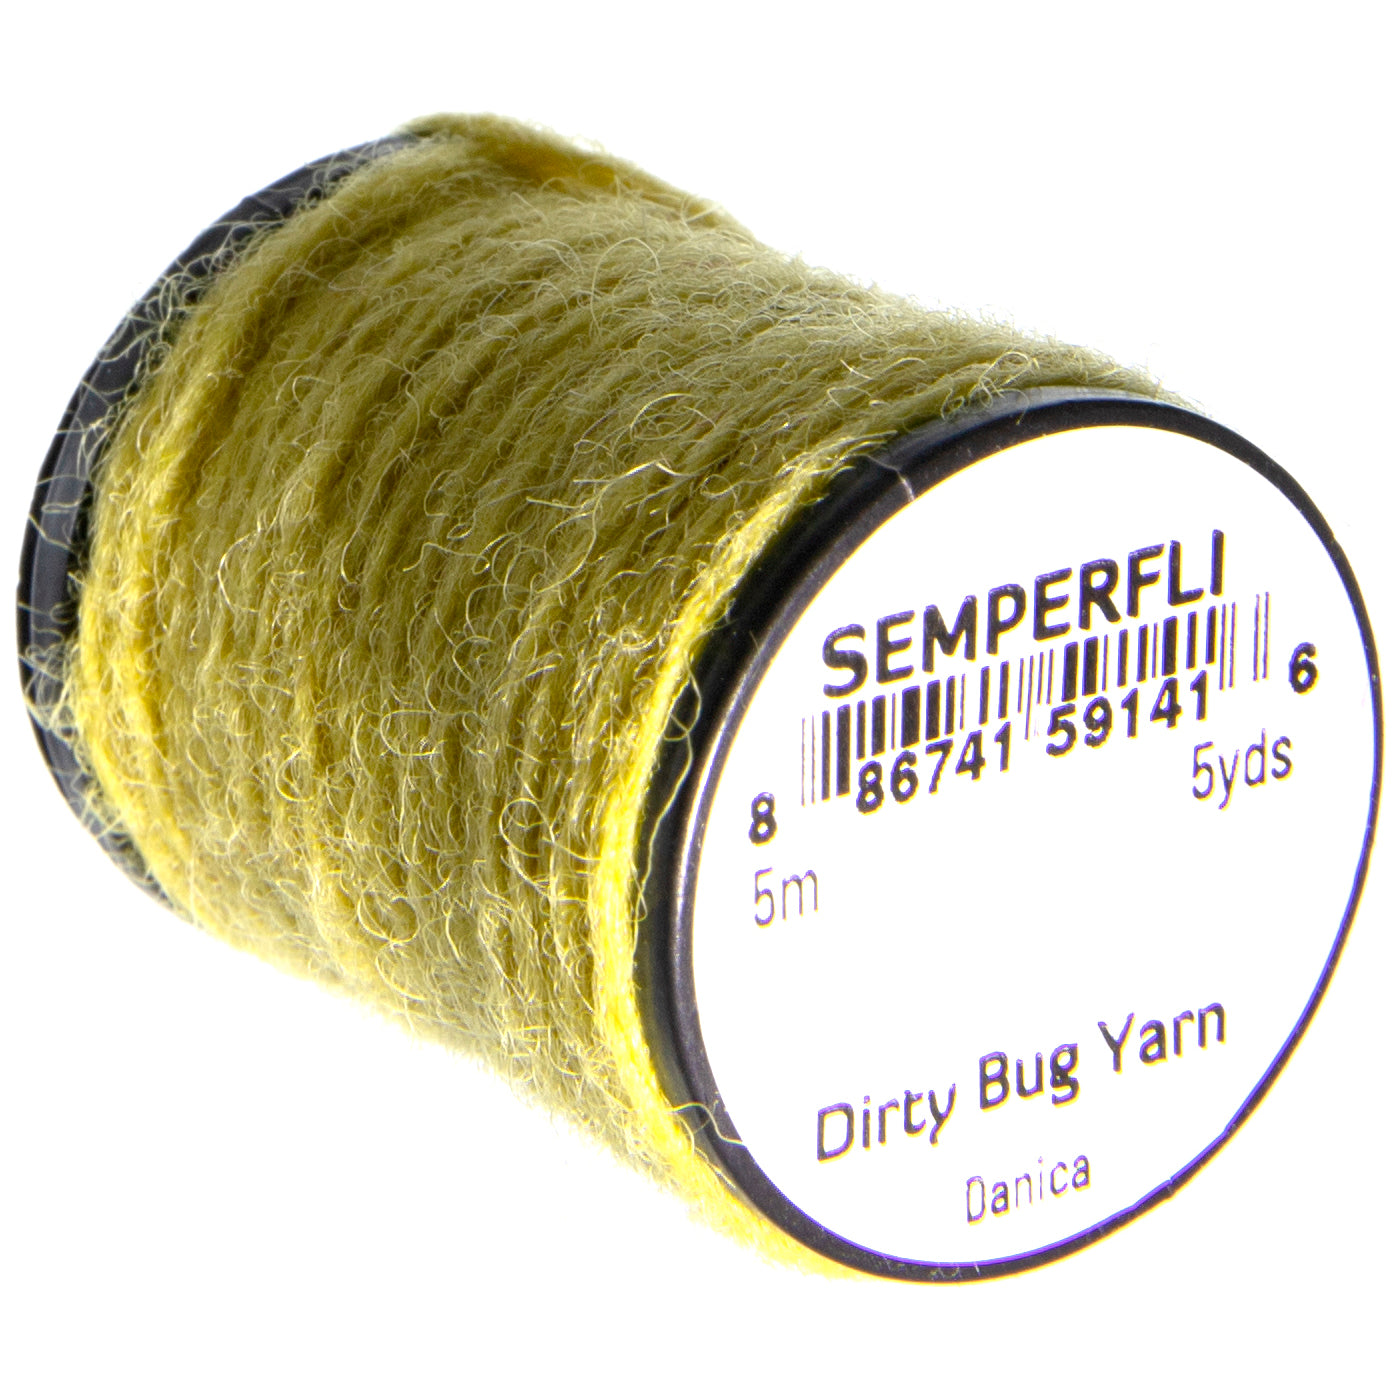 SemperFli Dirty Bug Yarn